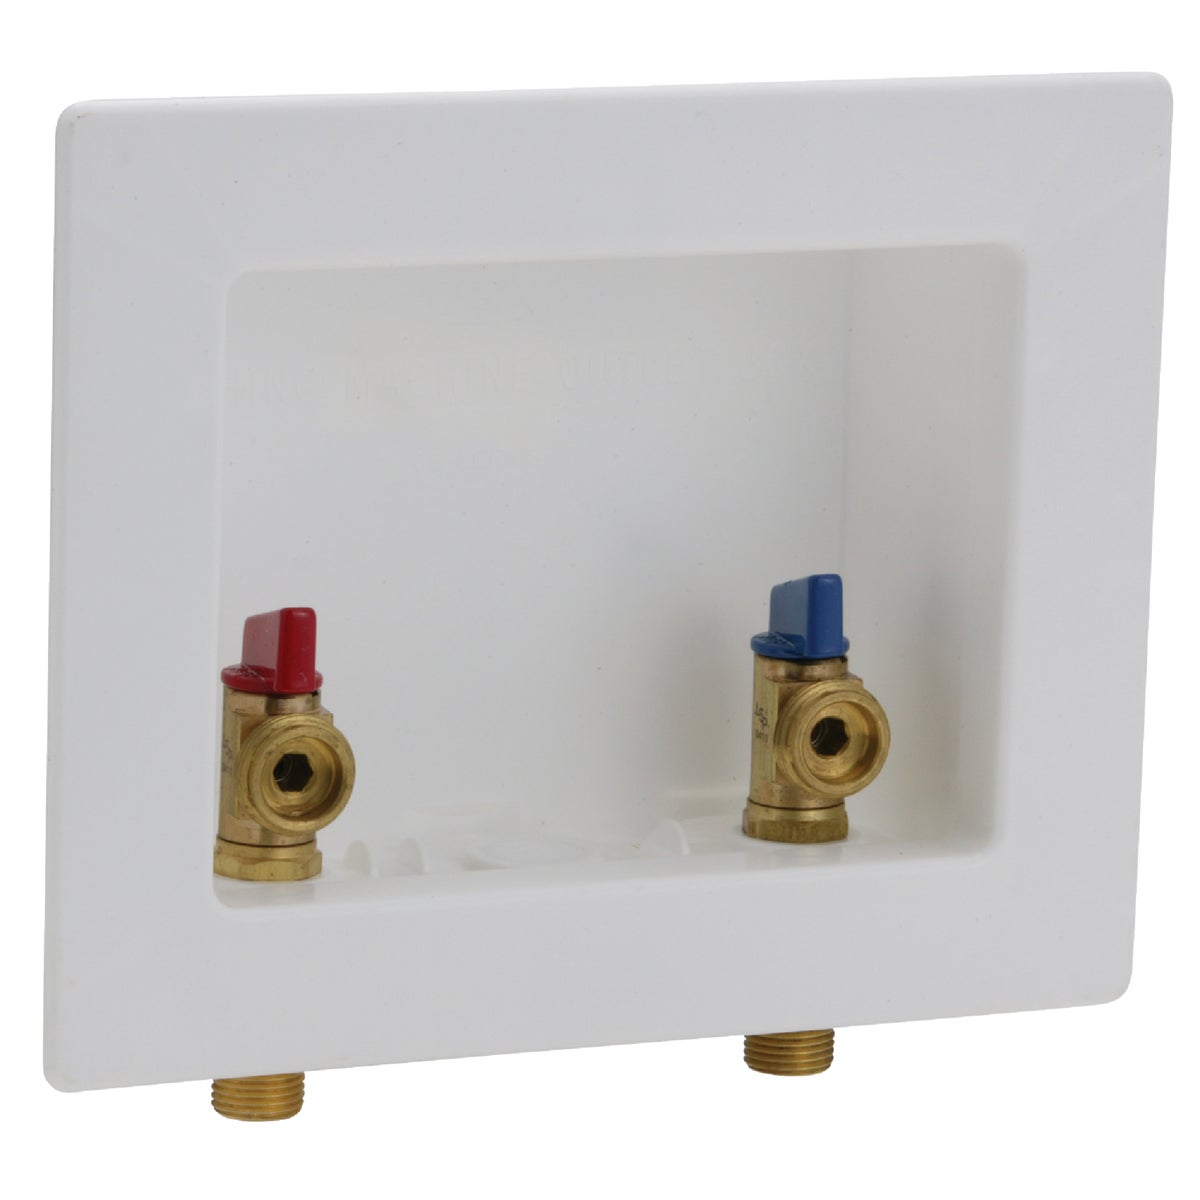 Item 457523, Durable brass E-Z TURN quarter turn ball valves provide 1/2" sweat 